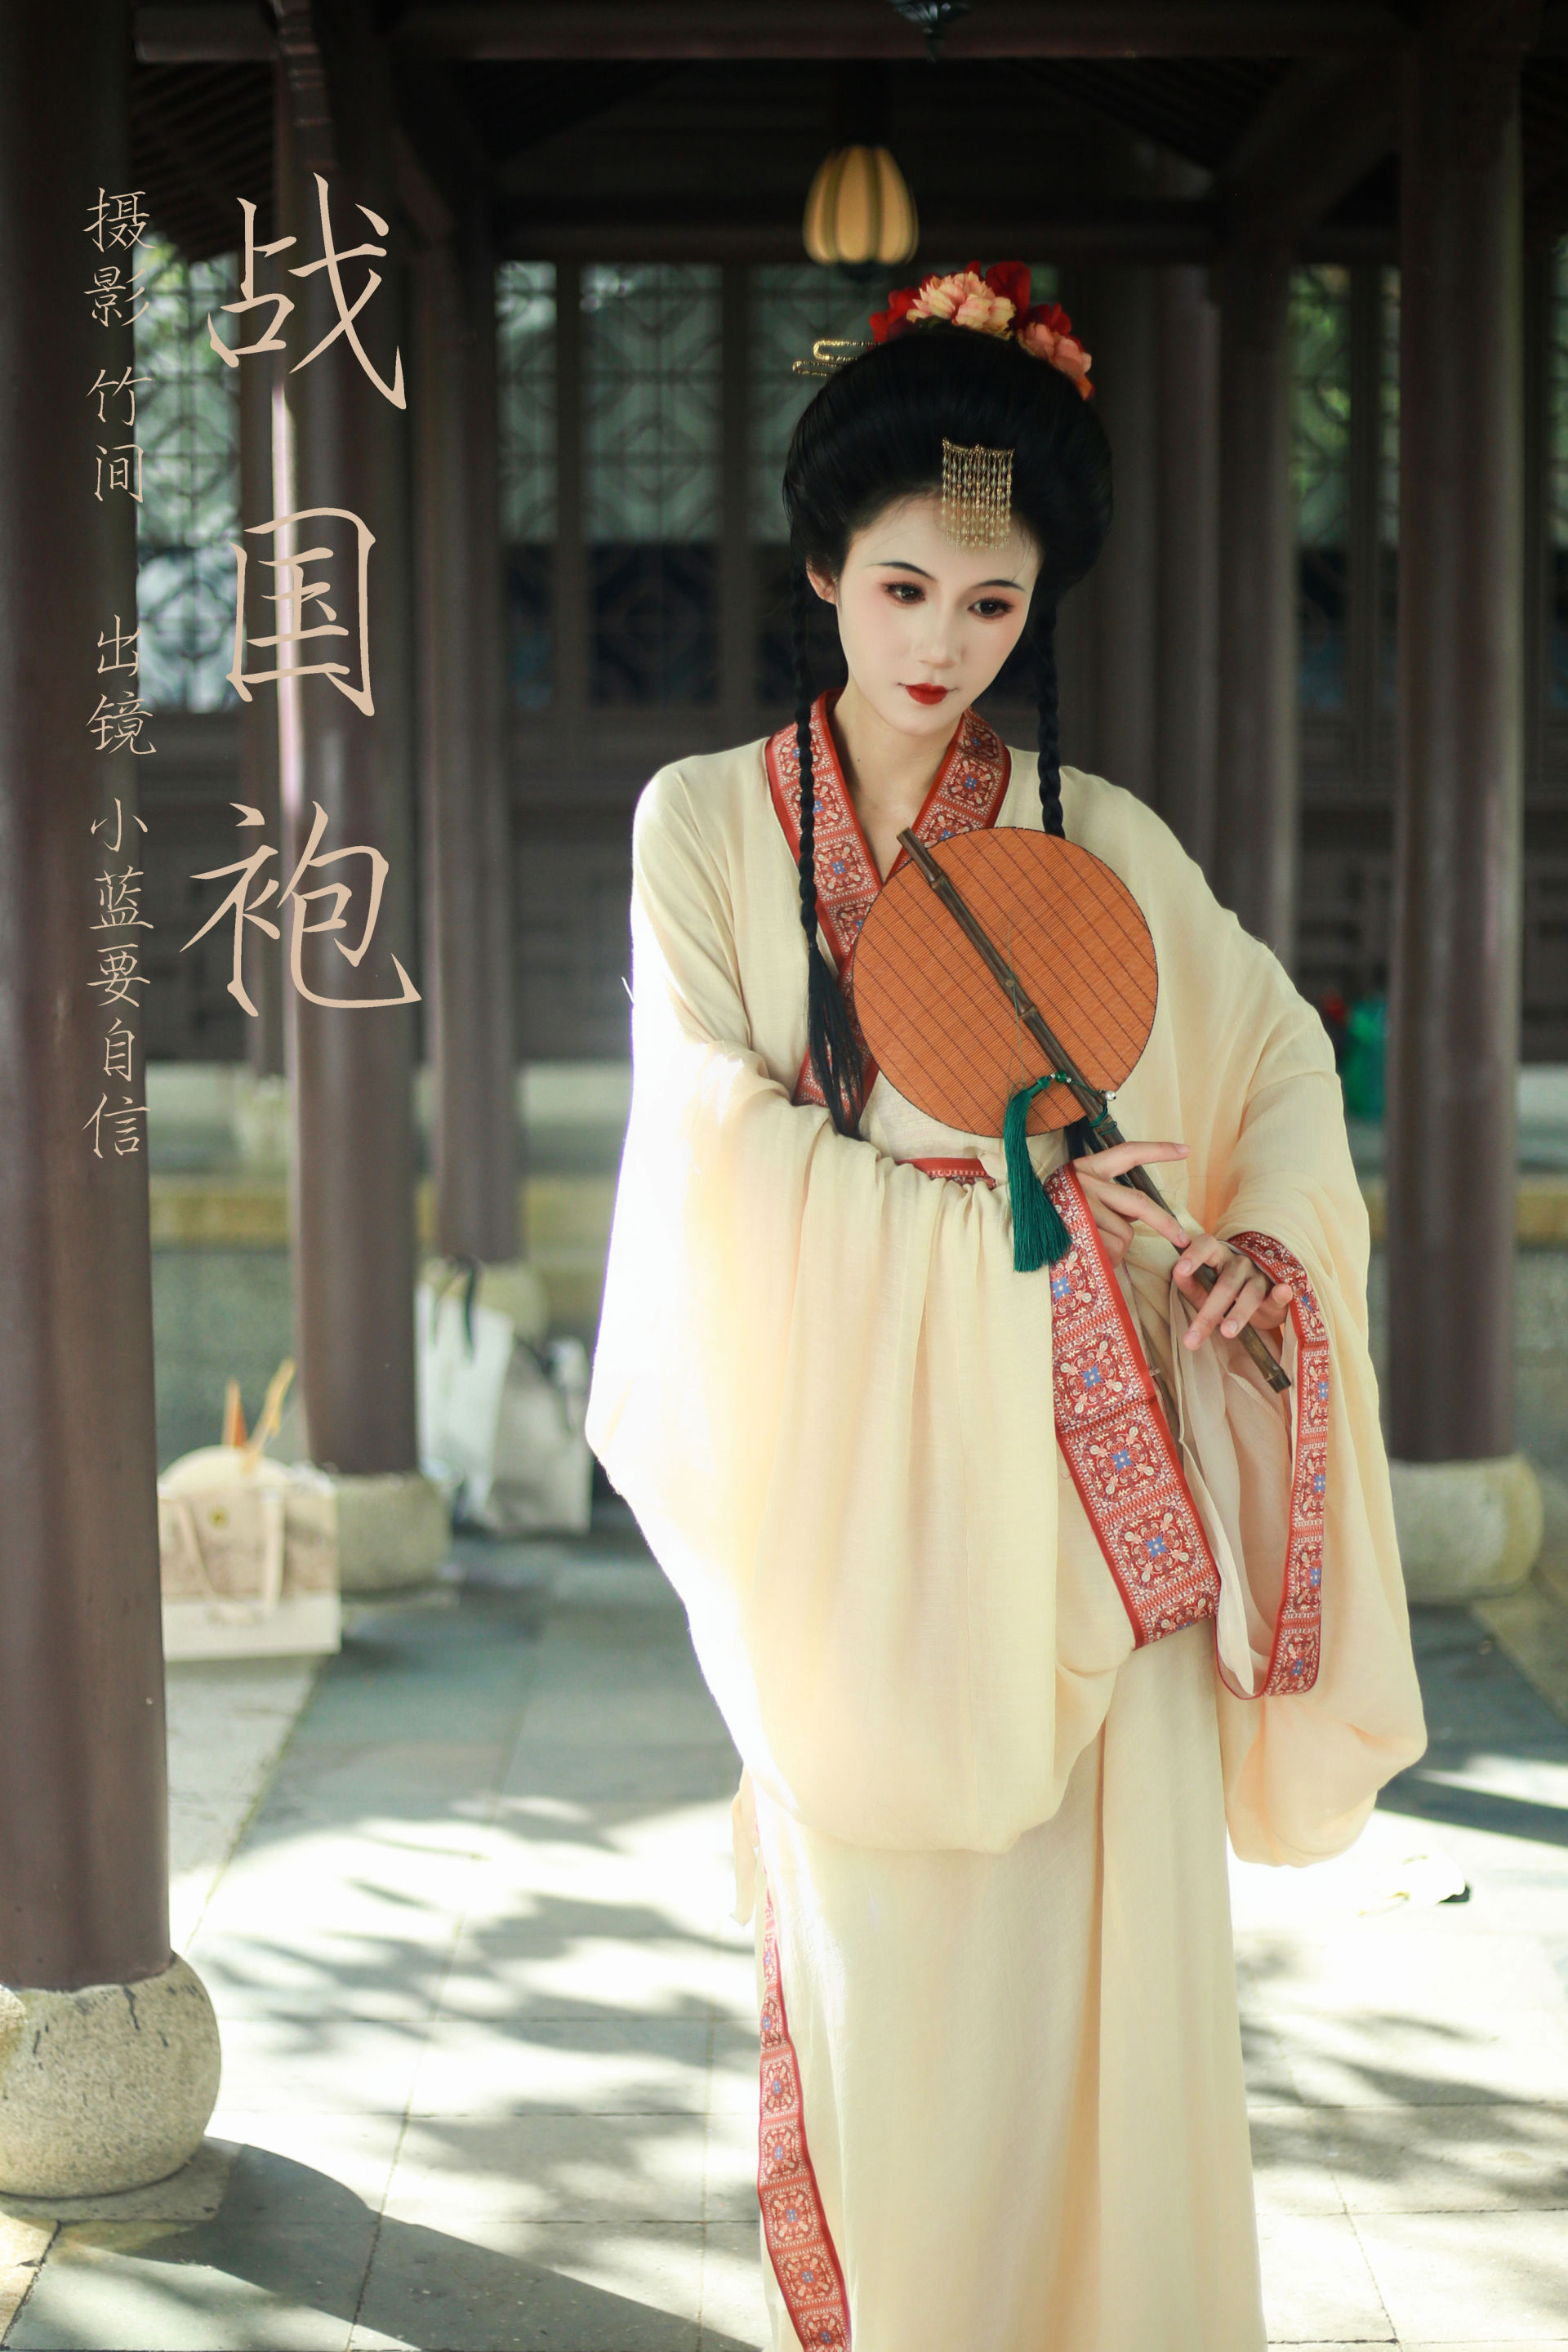 战国袍 中国风 古代 女子 清冷 人像